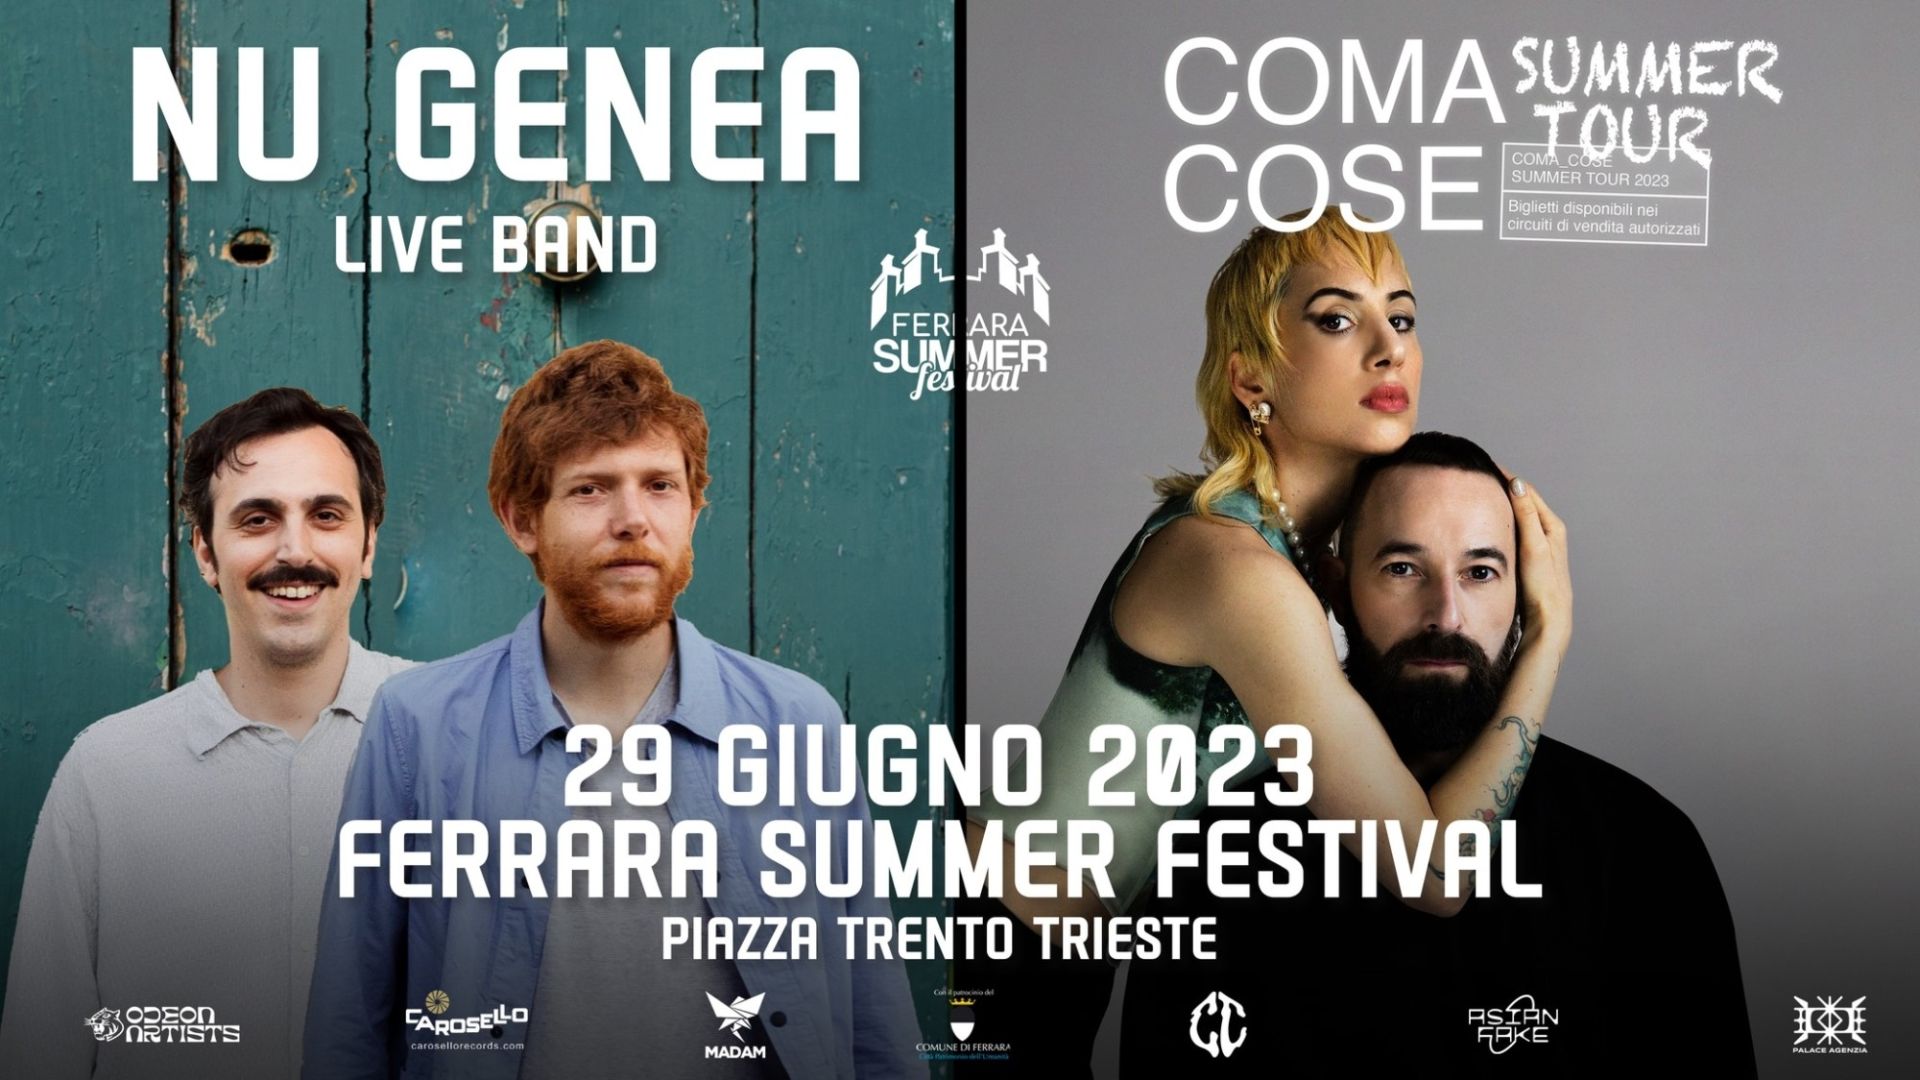 Nu Genea - Coma Cose - Ferrara Summer Festival